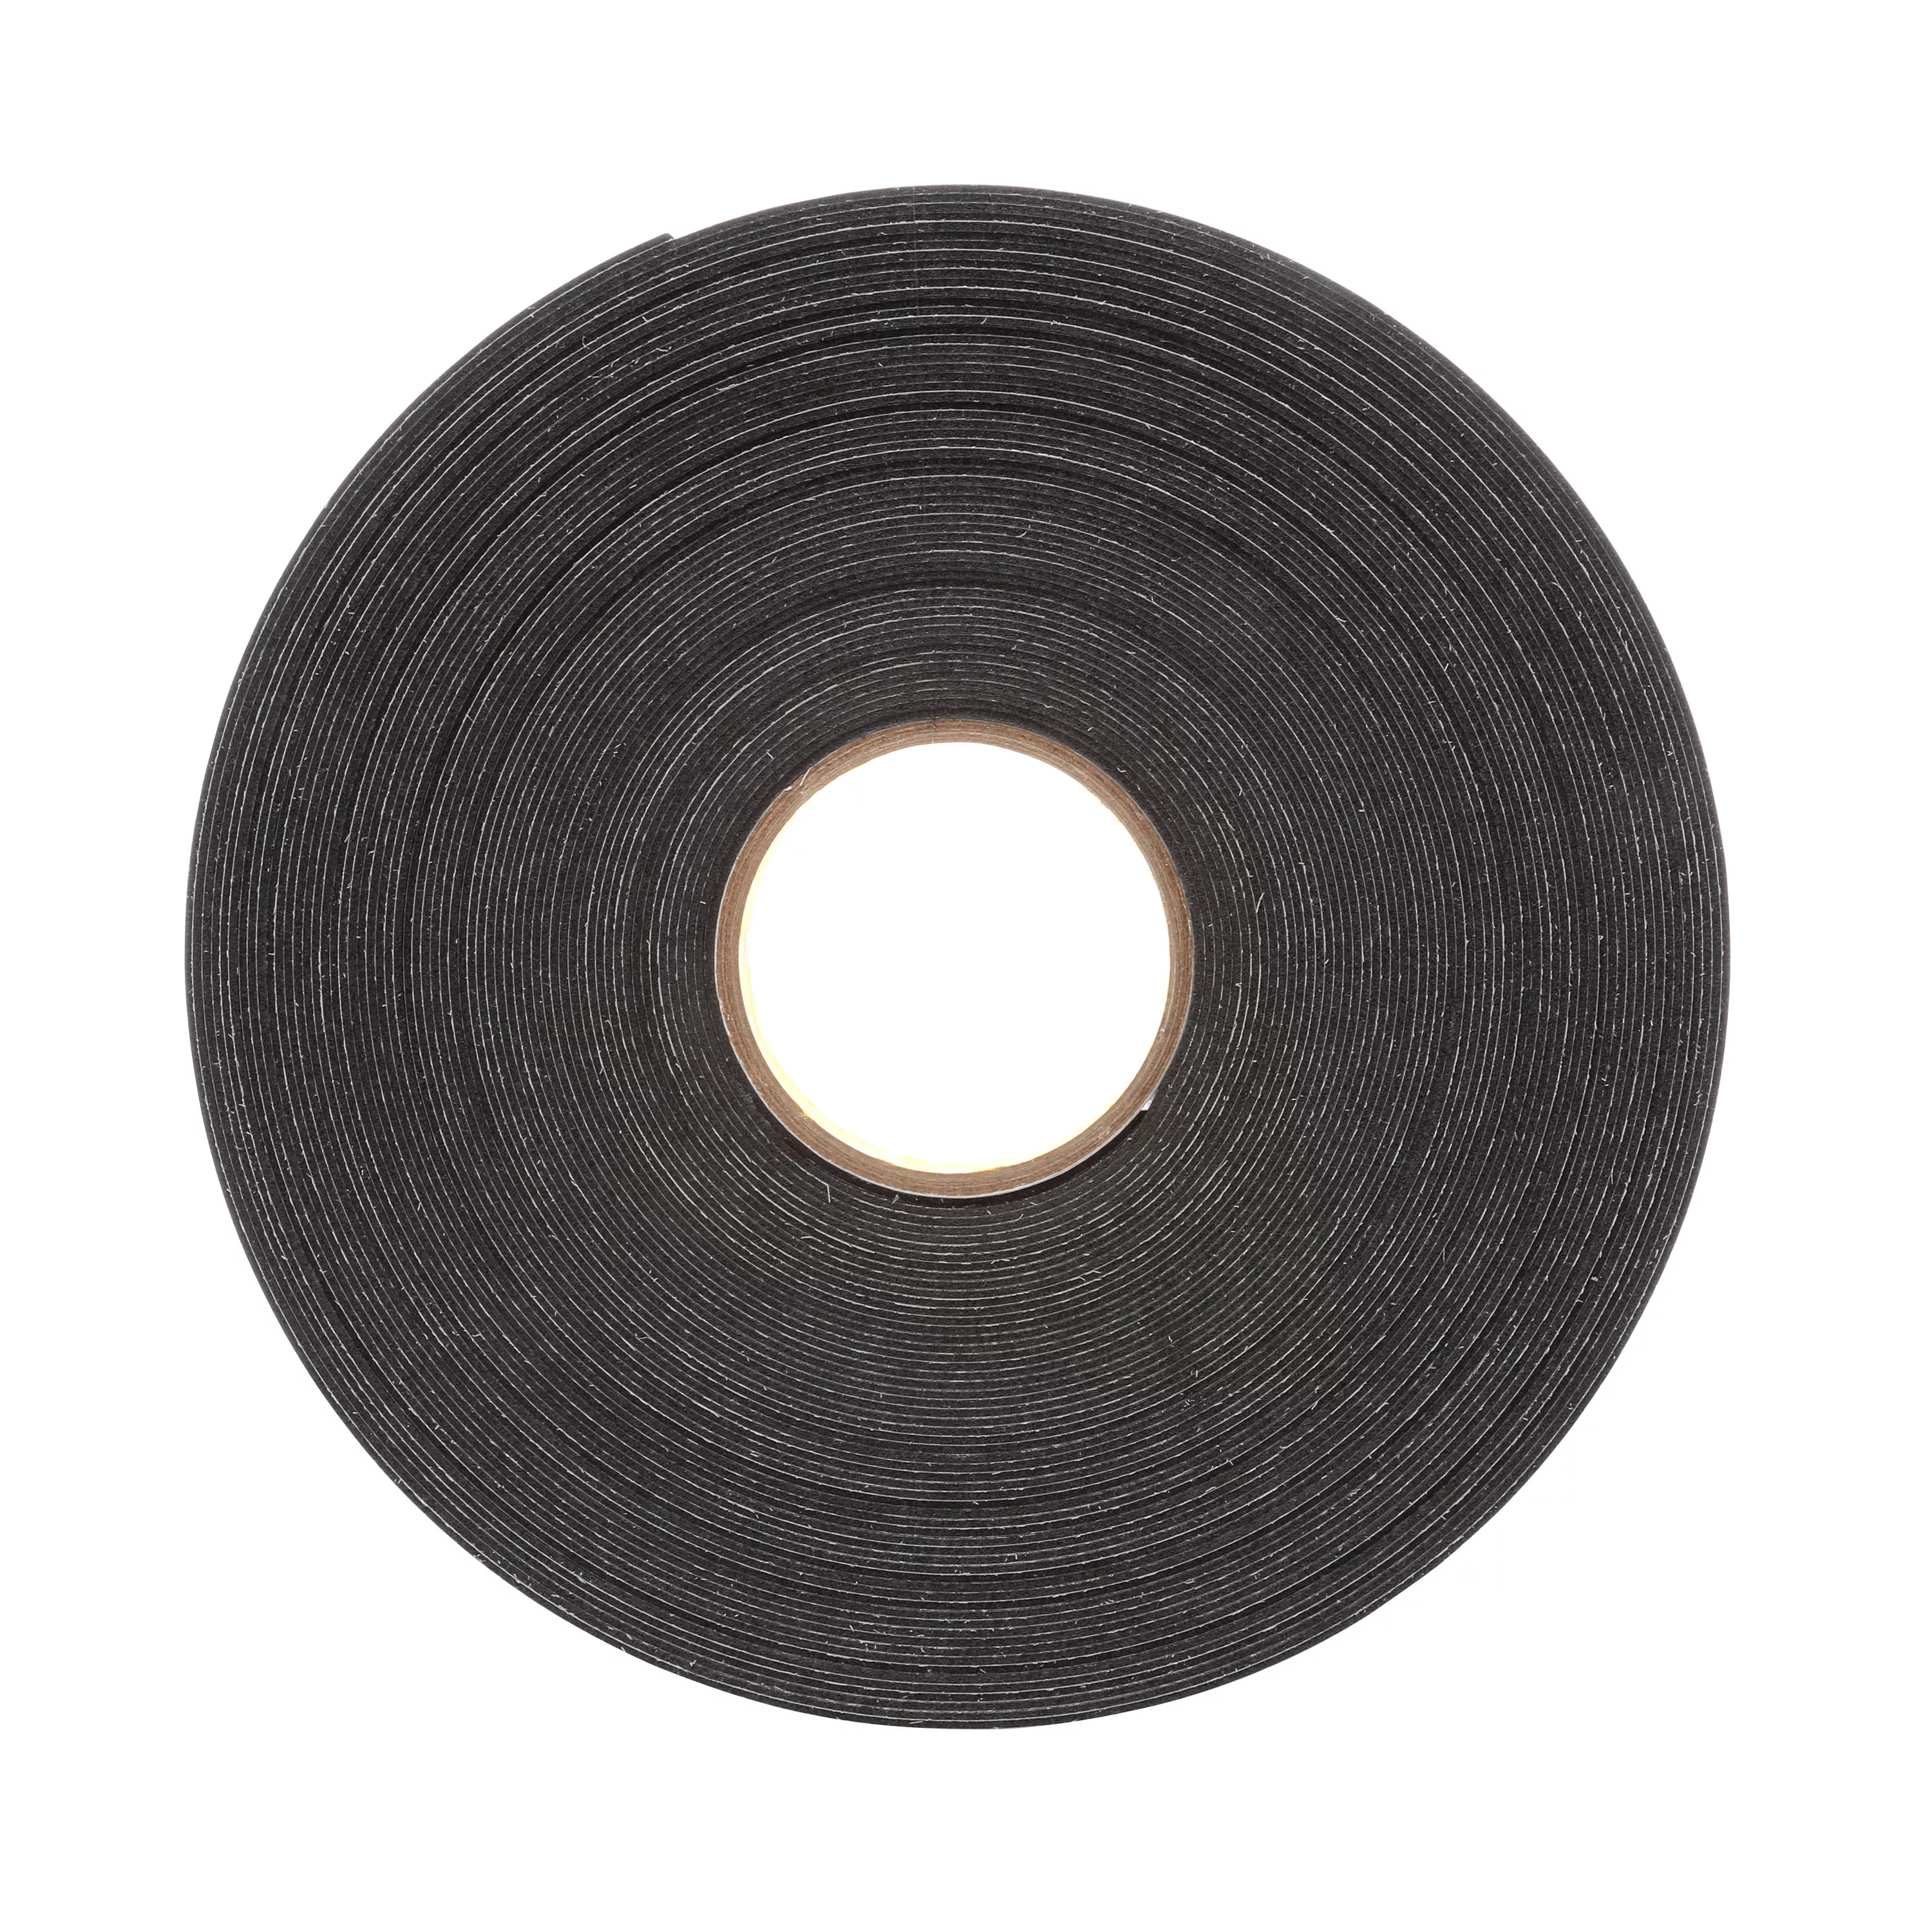 3M™ Double Coated Polyethylene Foam Tape 4462, Black, 1/4 in x 72 yd, 31
mil, 36 Roll/Case